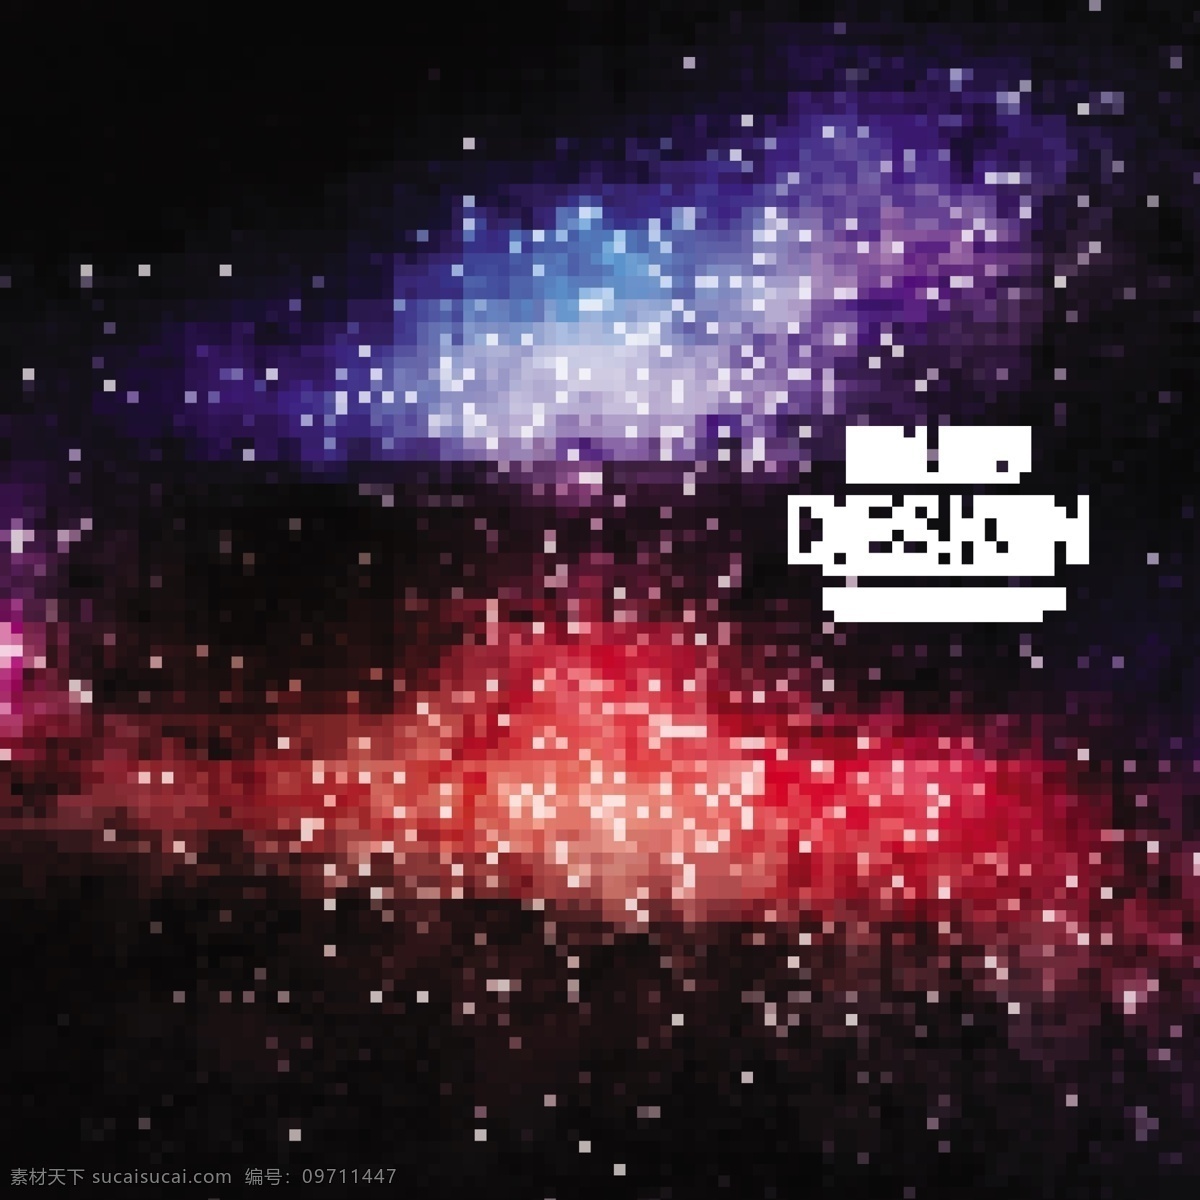 蓝色 红色 背景 星系 抽象 恒星 太阳 天空 科学 空间 黑夜 行星 符号 宇宙 卫星 星座 天文 星空